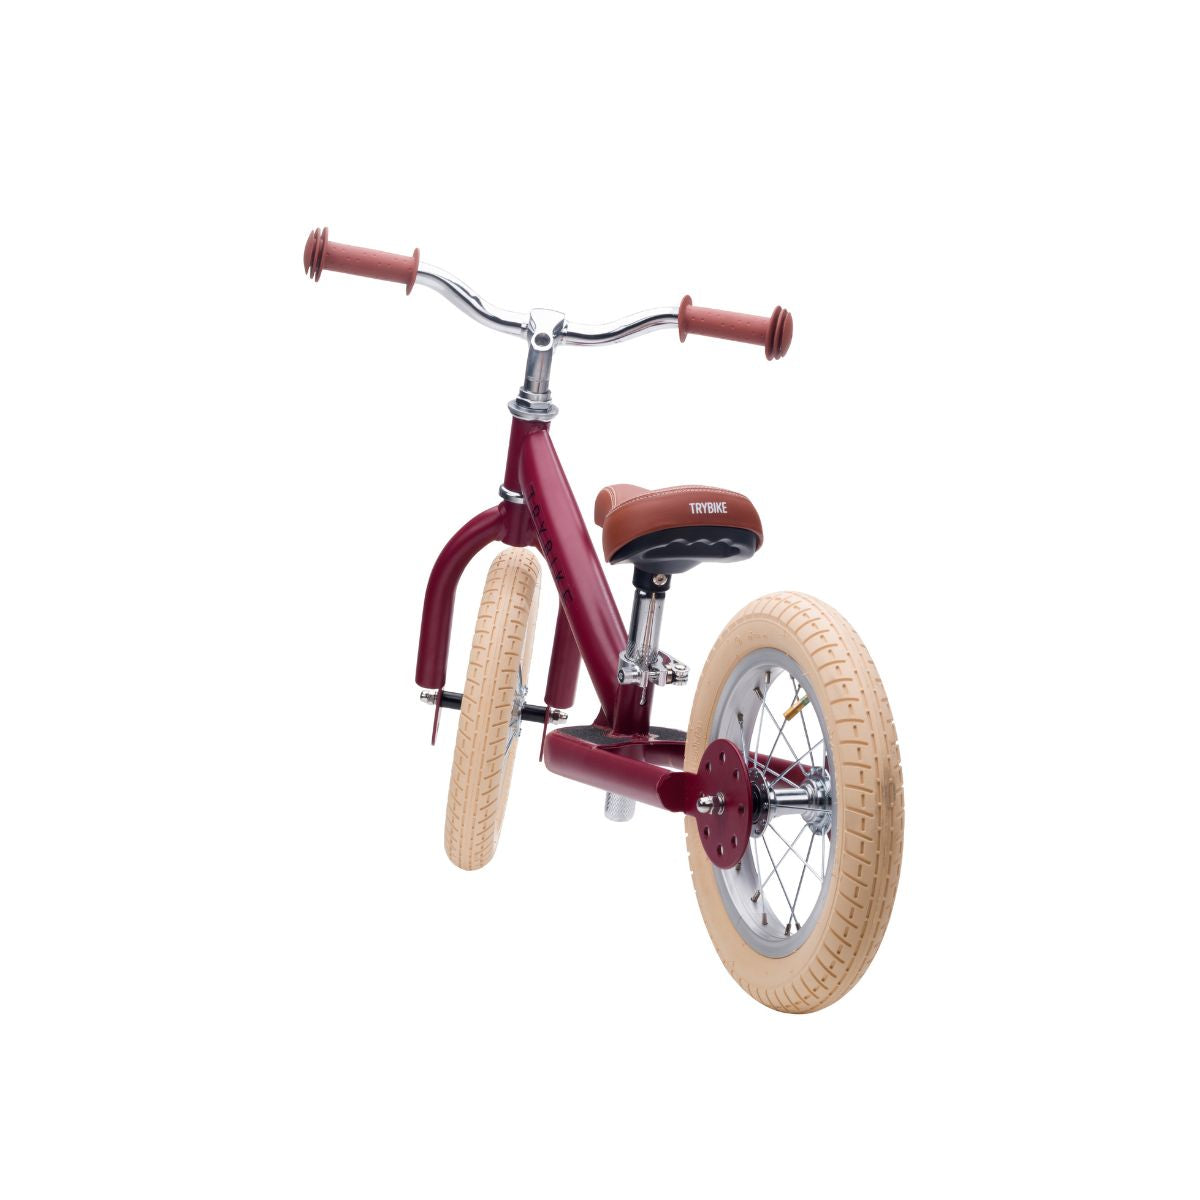 Op avontuur met de steel loopfiets in de kleur  mat rood van Trybike. De metalen tweewieler is geschikt vanaf 2 jaar en leert kinderen lopen en fietsen. Groeit mee met je kind. In diverse kleuren. VanZus